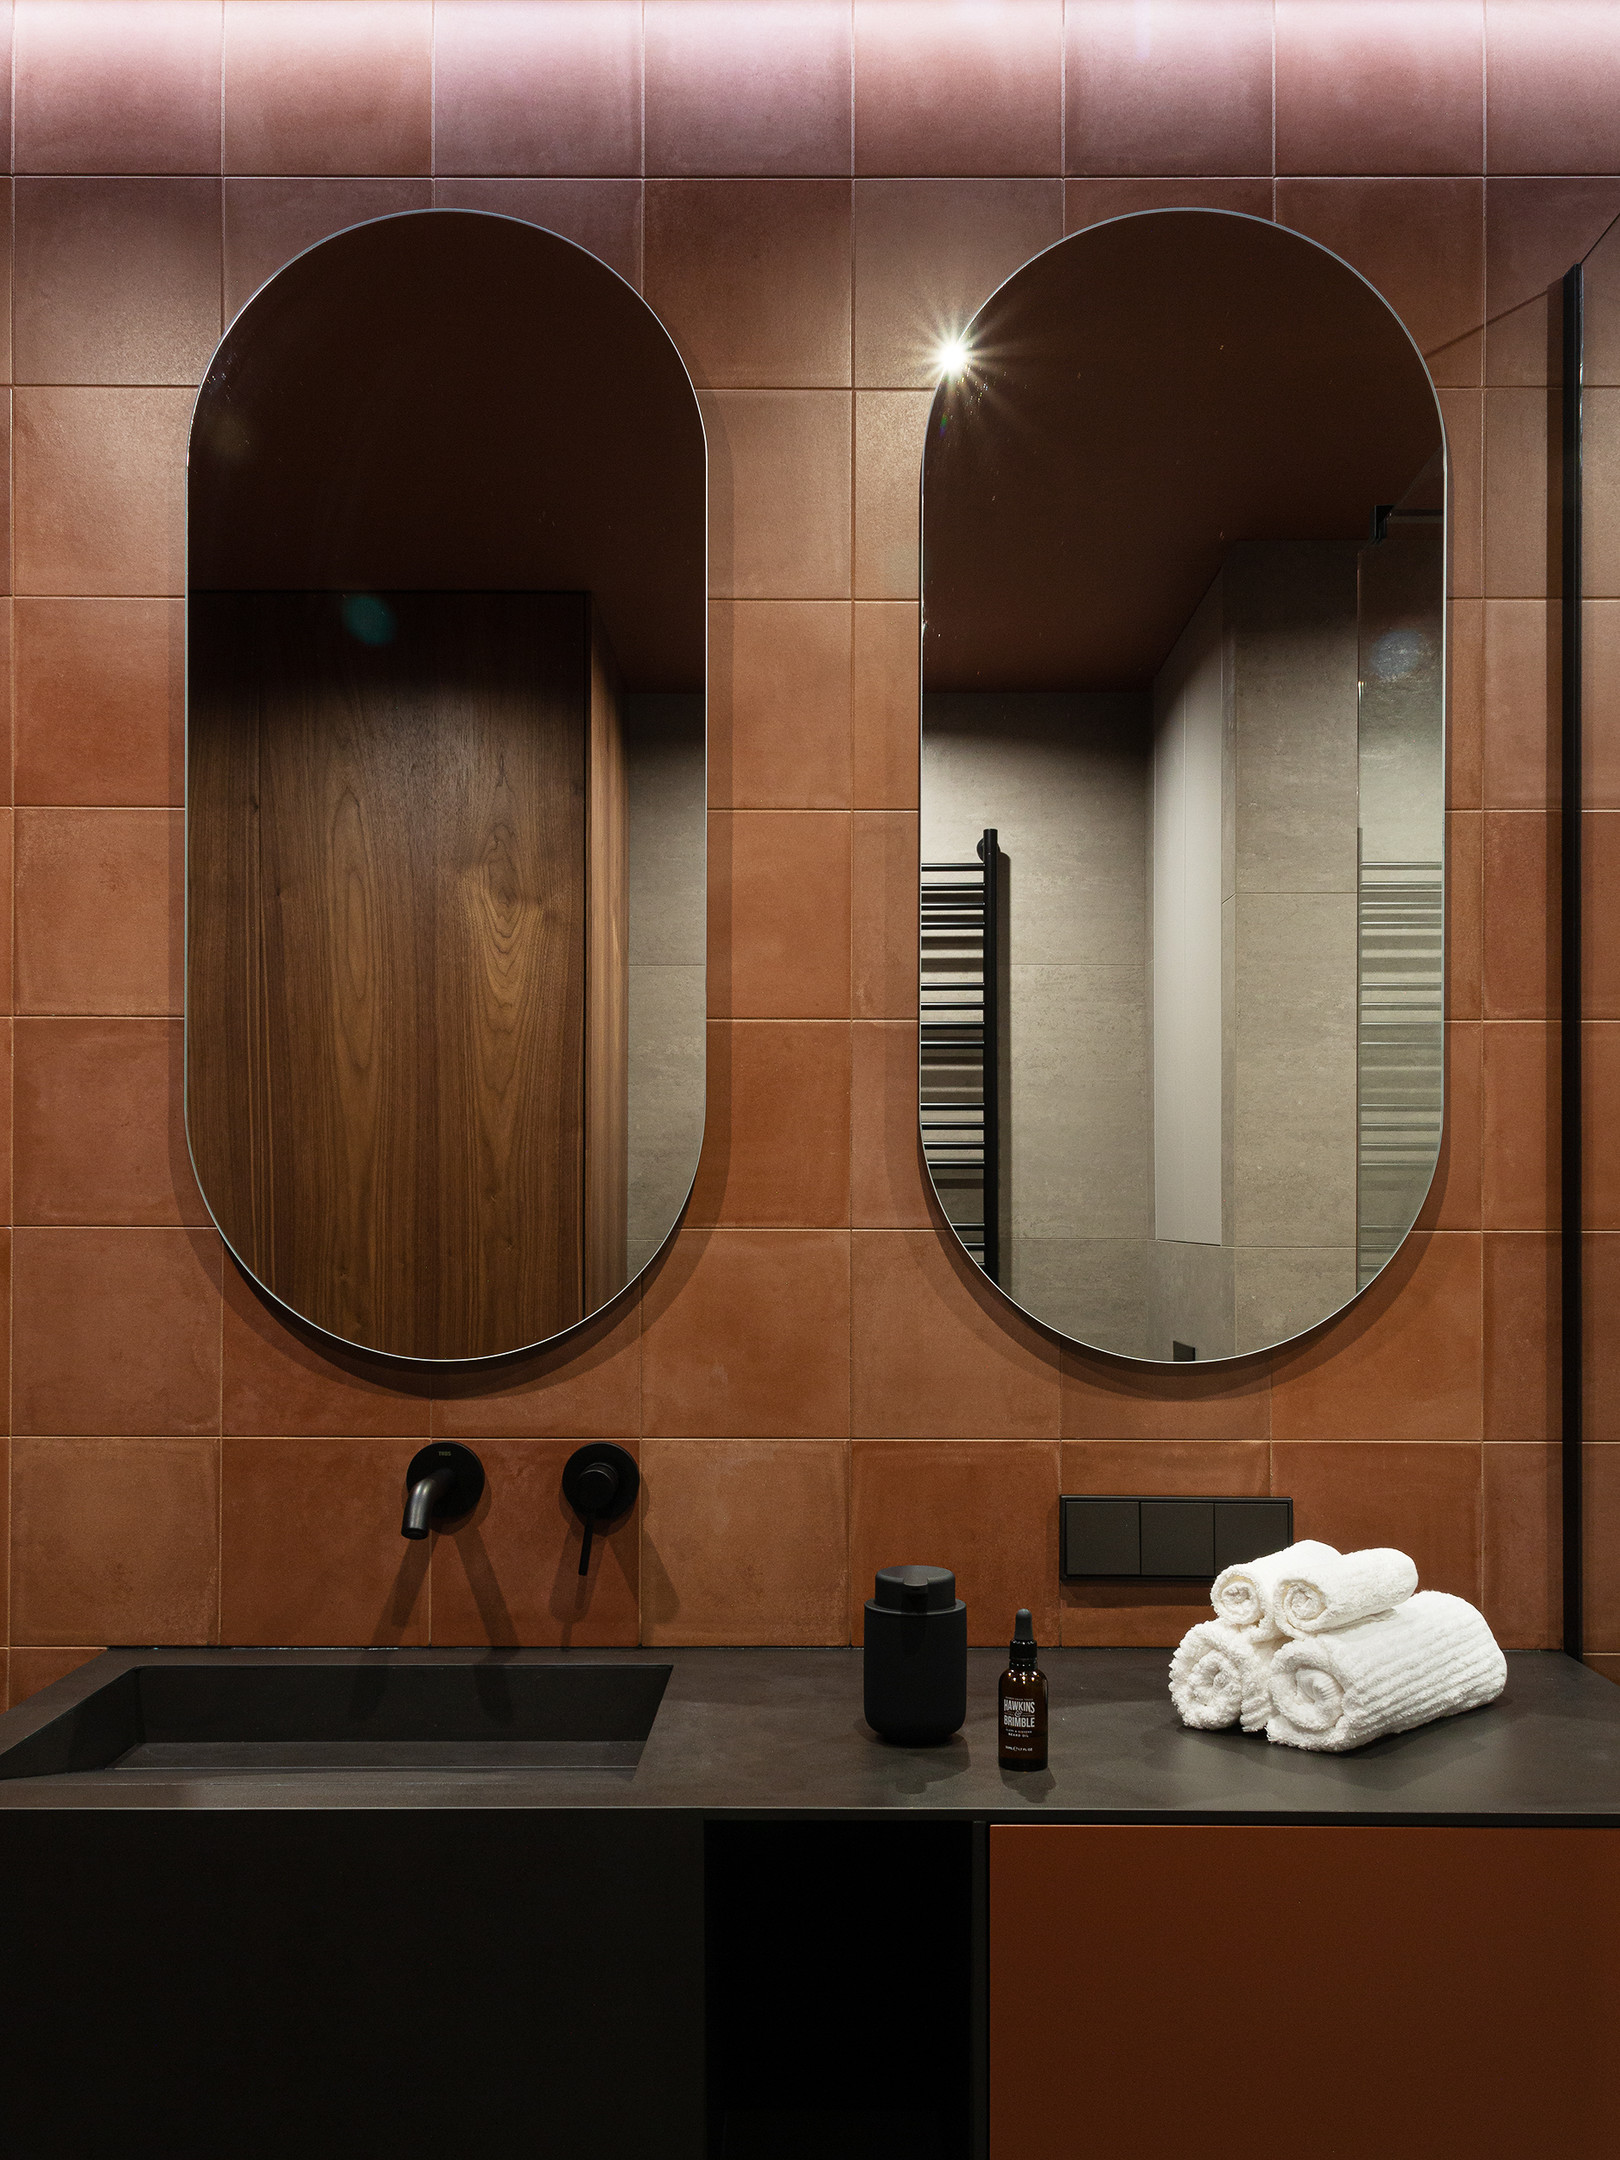 Riêng khu vực bồn rửa với gam màu đen vững chãi, phía trên tường lắp đặt đến 2 tấm gương hình oval nhằm góp phần nhân đôi hình ảnh và ánh sáng cho phòng tắm nhỏ rộng rãi, sáng sủa hơn.